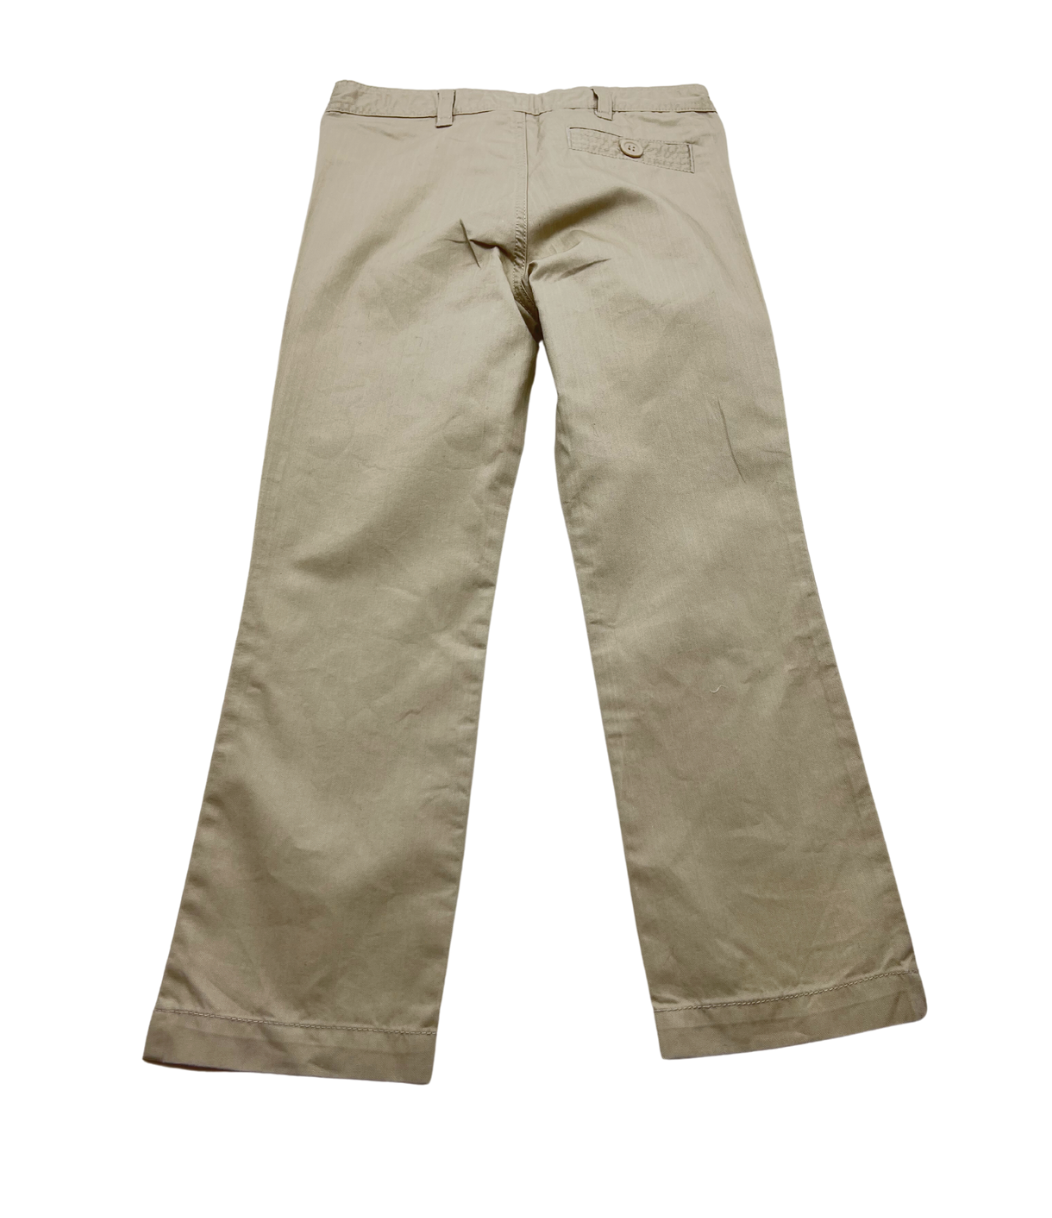 BONPOINT - Pantalon beige - 4 ans